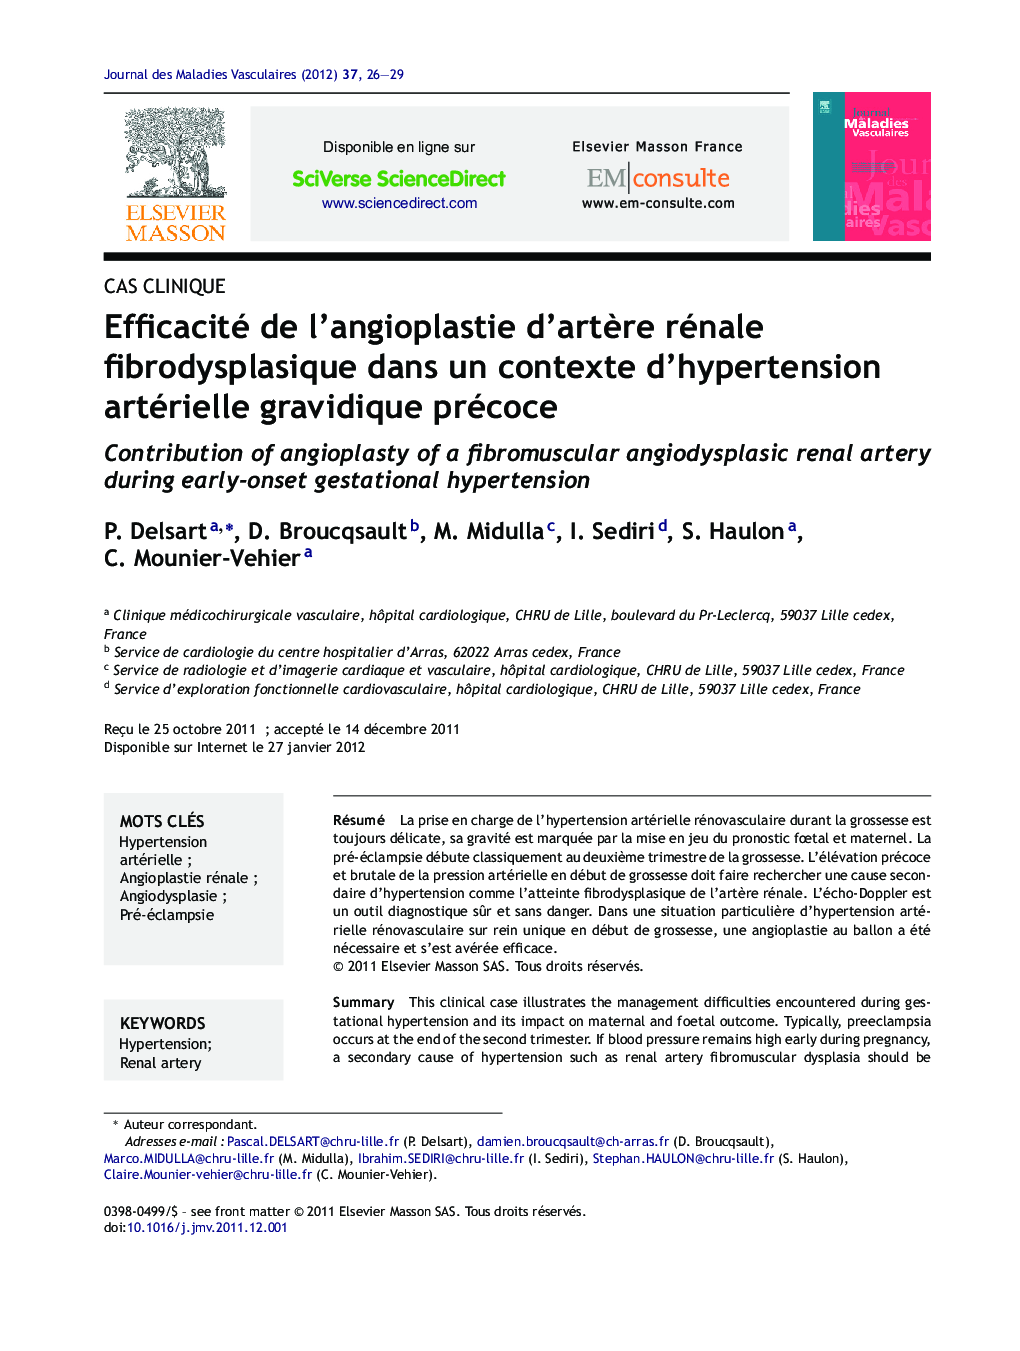 Efficacité de l'angioplastie d'artÃ¨re rénale fibrodysplasique dans un contexte d'hypertension artérielle gravidique précoce